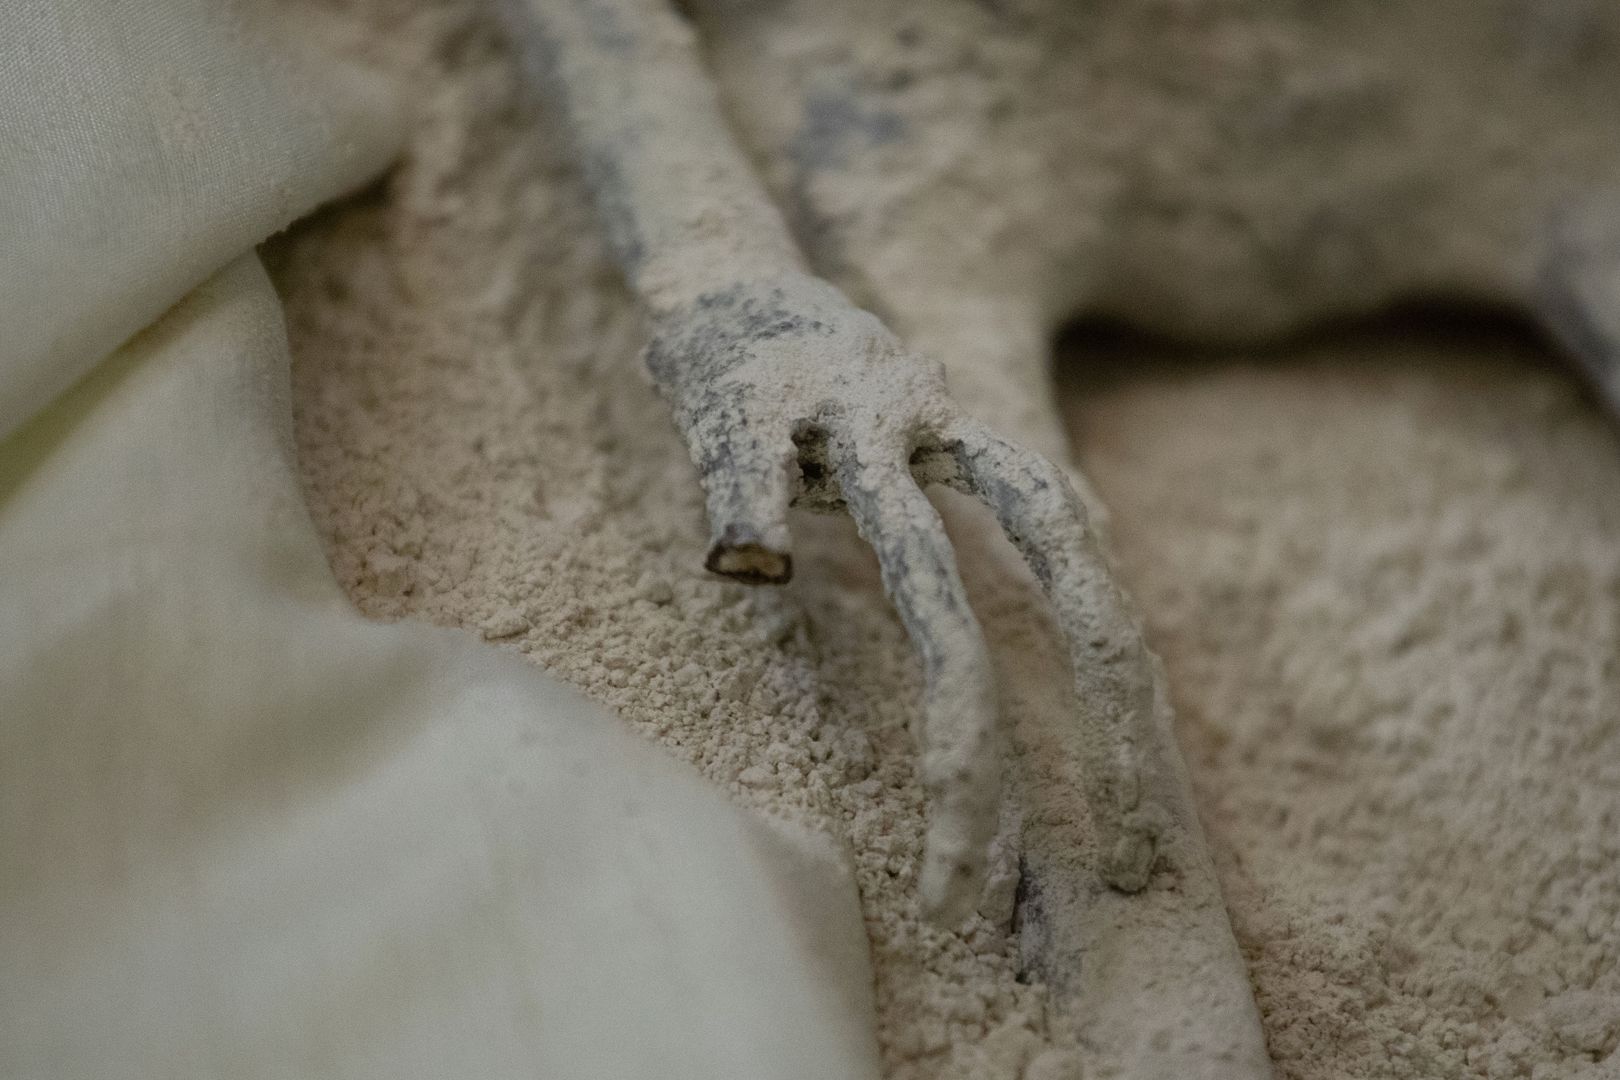 Badacze twierdzą, że mumie "to nowy gatunek". Chcą odkryć prawdę